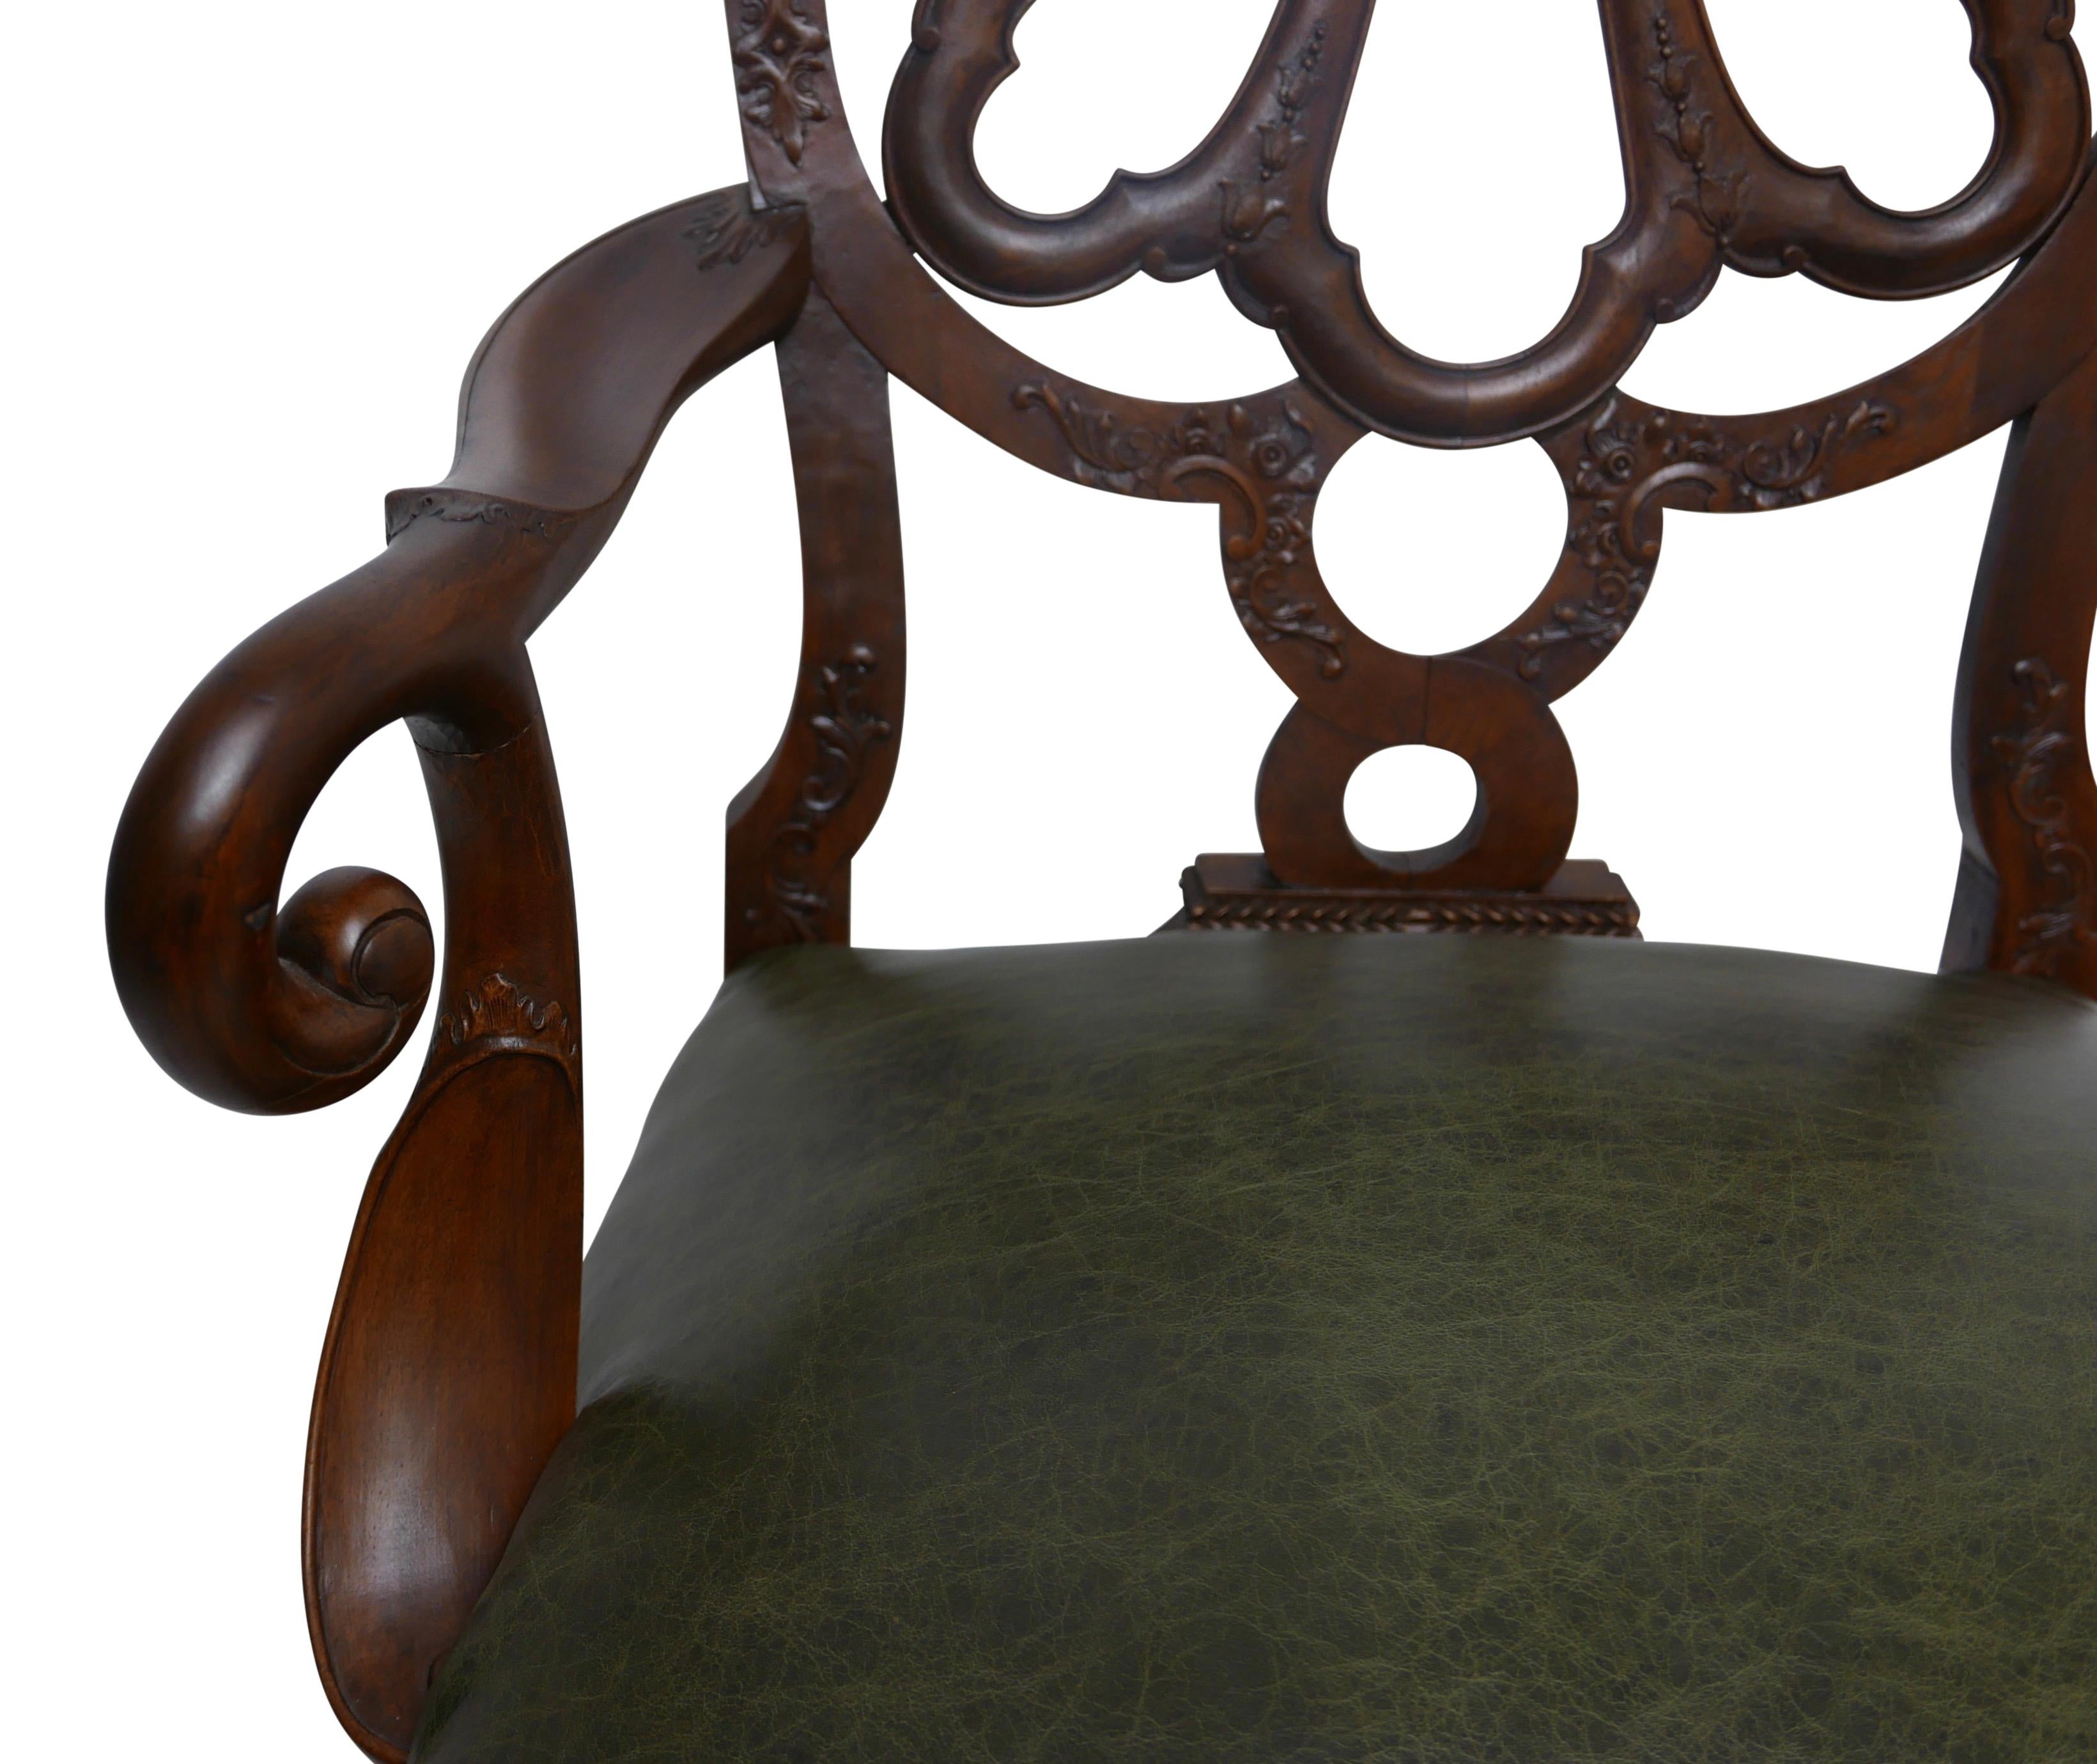 Un fauteuil en noyer de qualité, magnifiquement sculpté et construit à la main, à la manière de Giles Grendey (1693-1780).
Le dos en forme d'anneau est constitué d'une bande ouverte avec un relief décoratif sculpté. Les deux côtés sont flanqués de